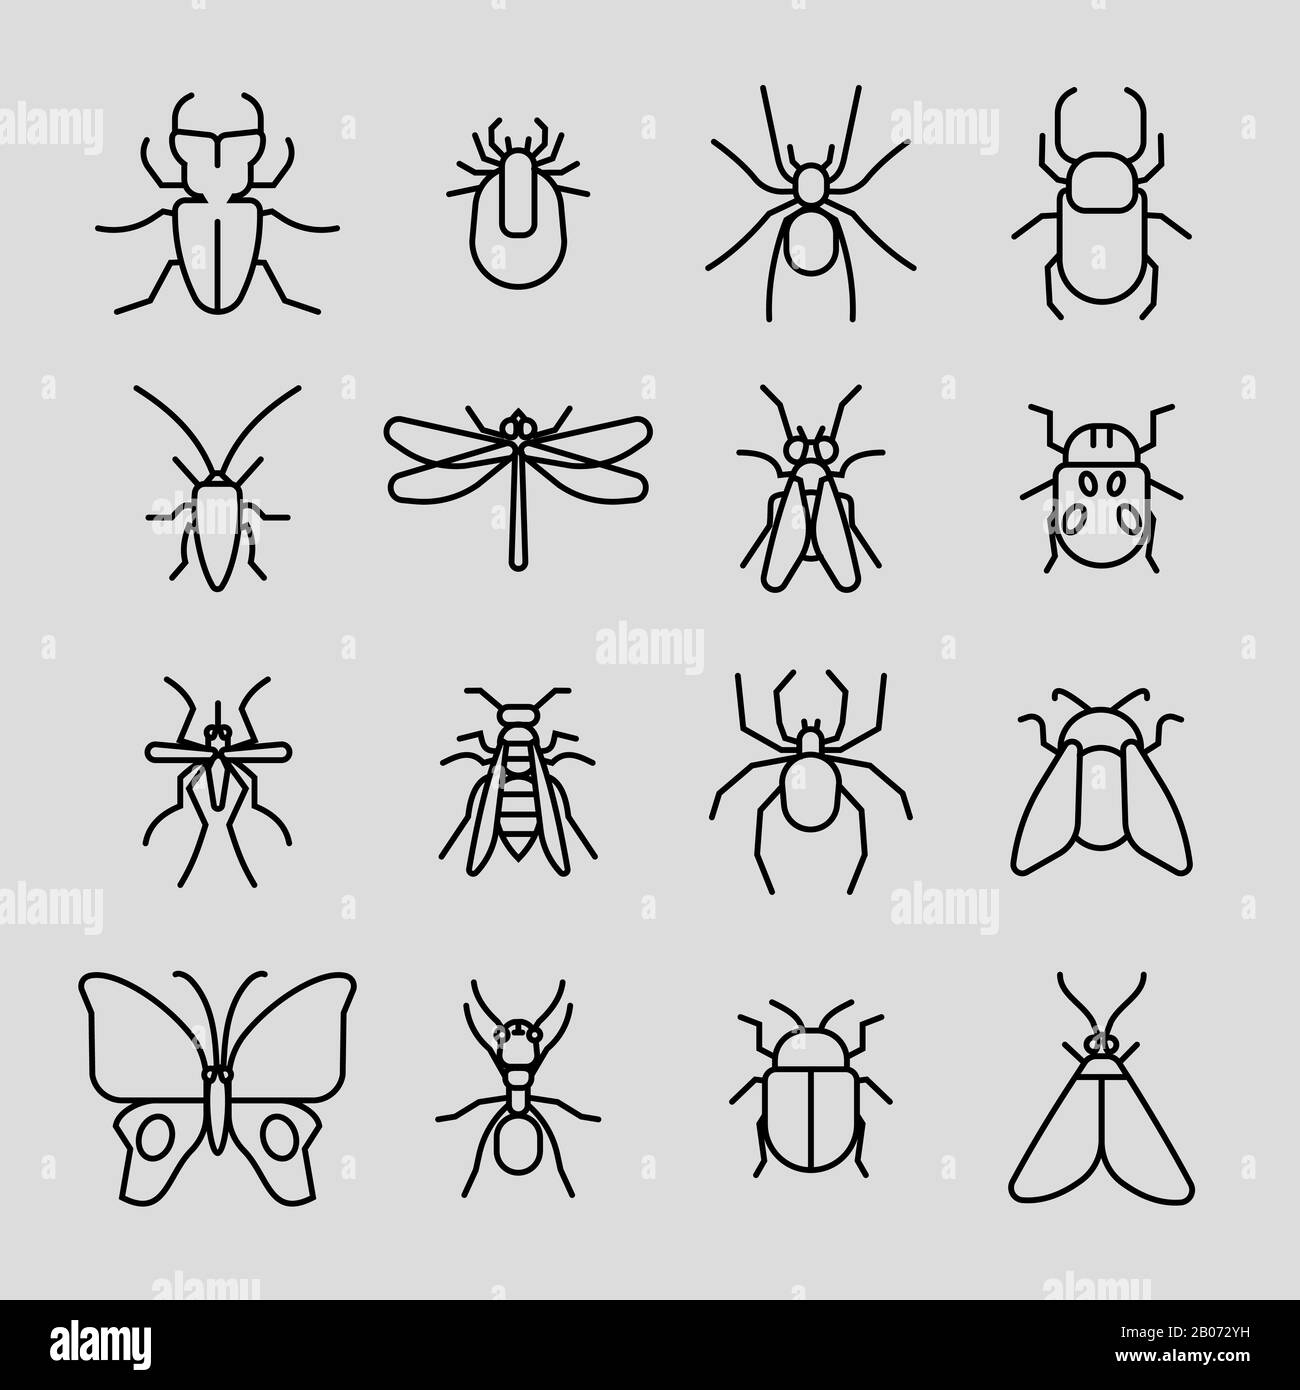 Dünne Linien-Symbole für Insektenvektoren festgelegt. Kakerlake und Mücke, Spinne und Schmetterling Illustration Stock Vektor